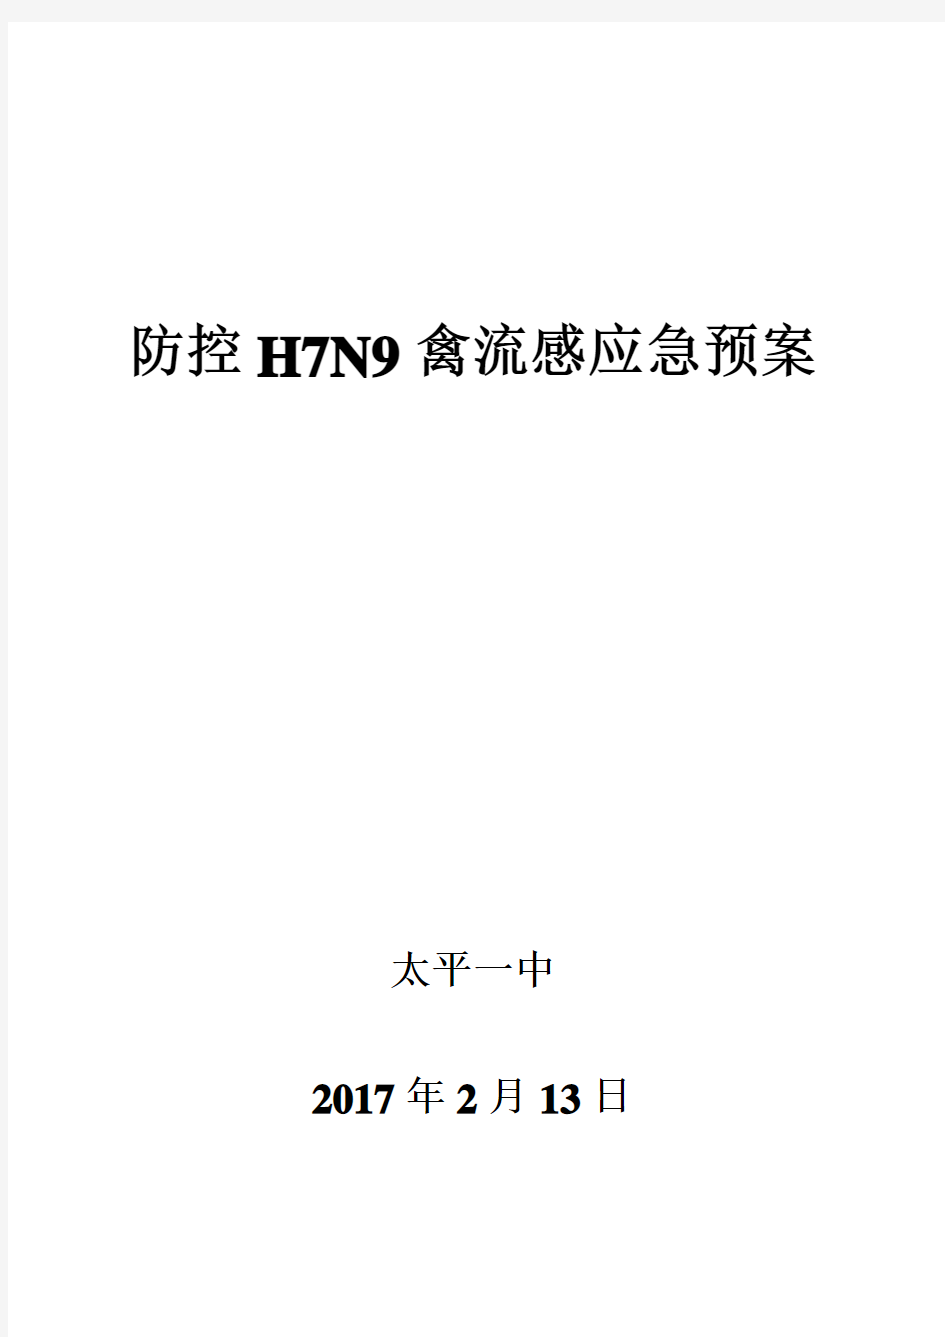 太平一中防控H7N9禽流感应急预案